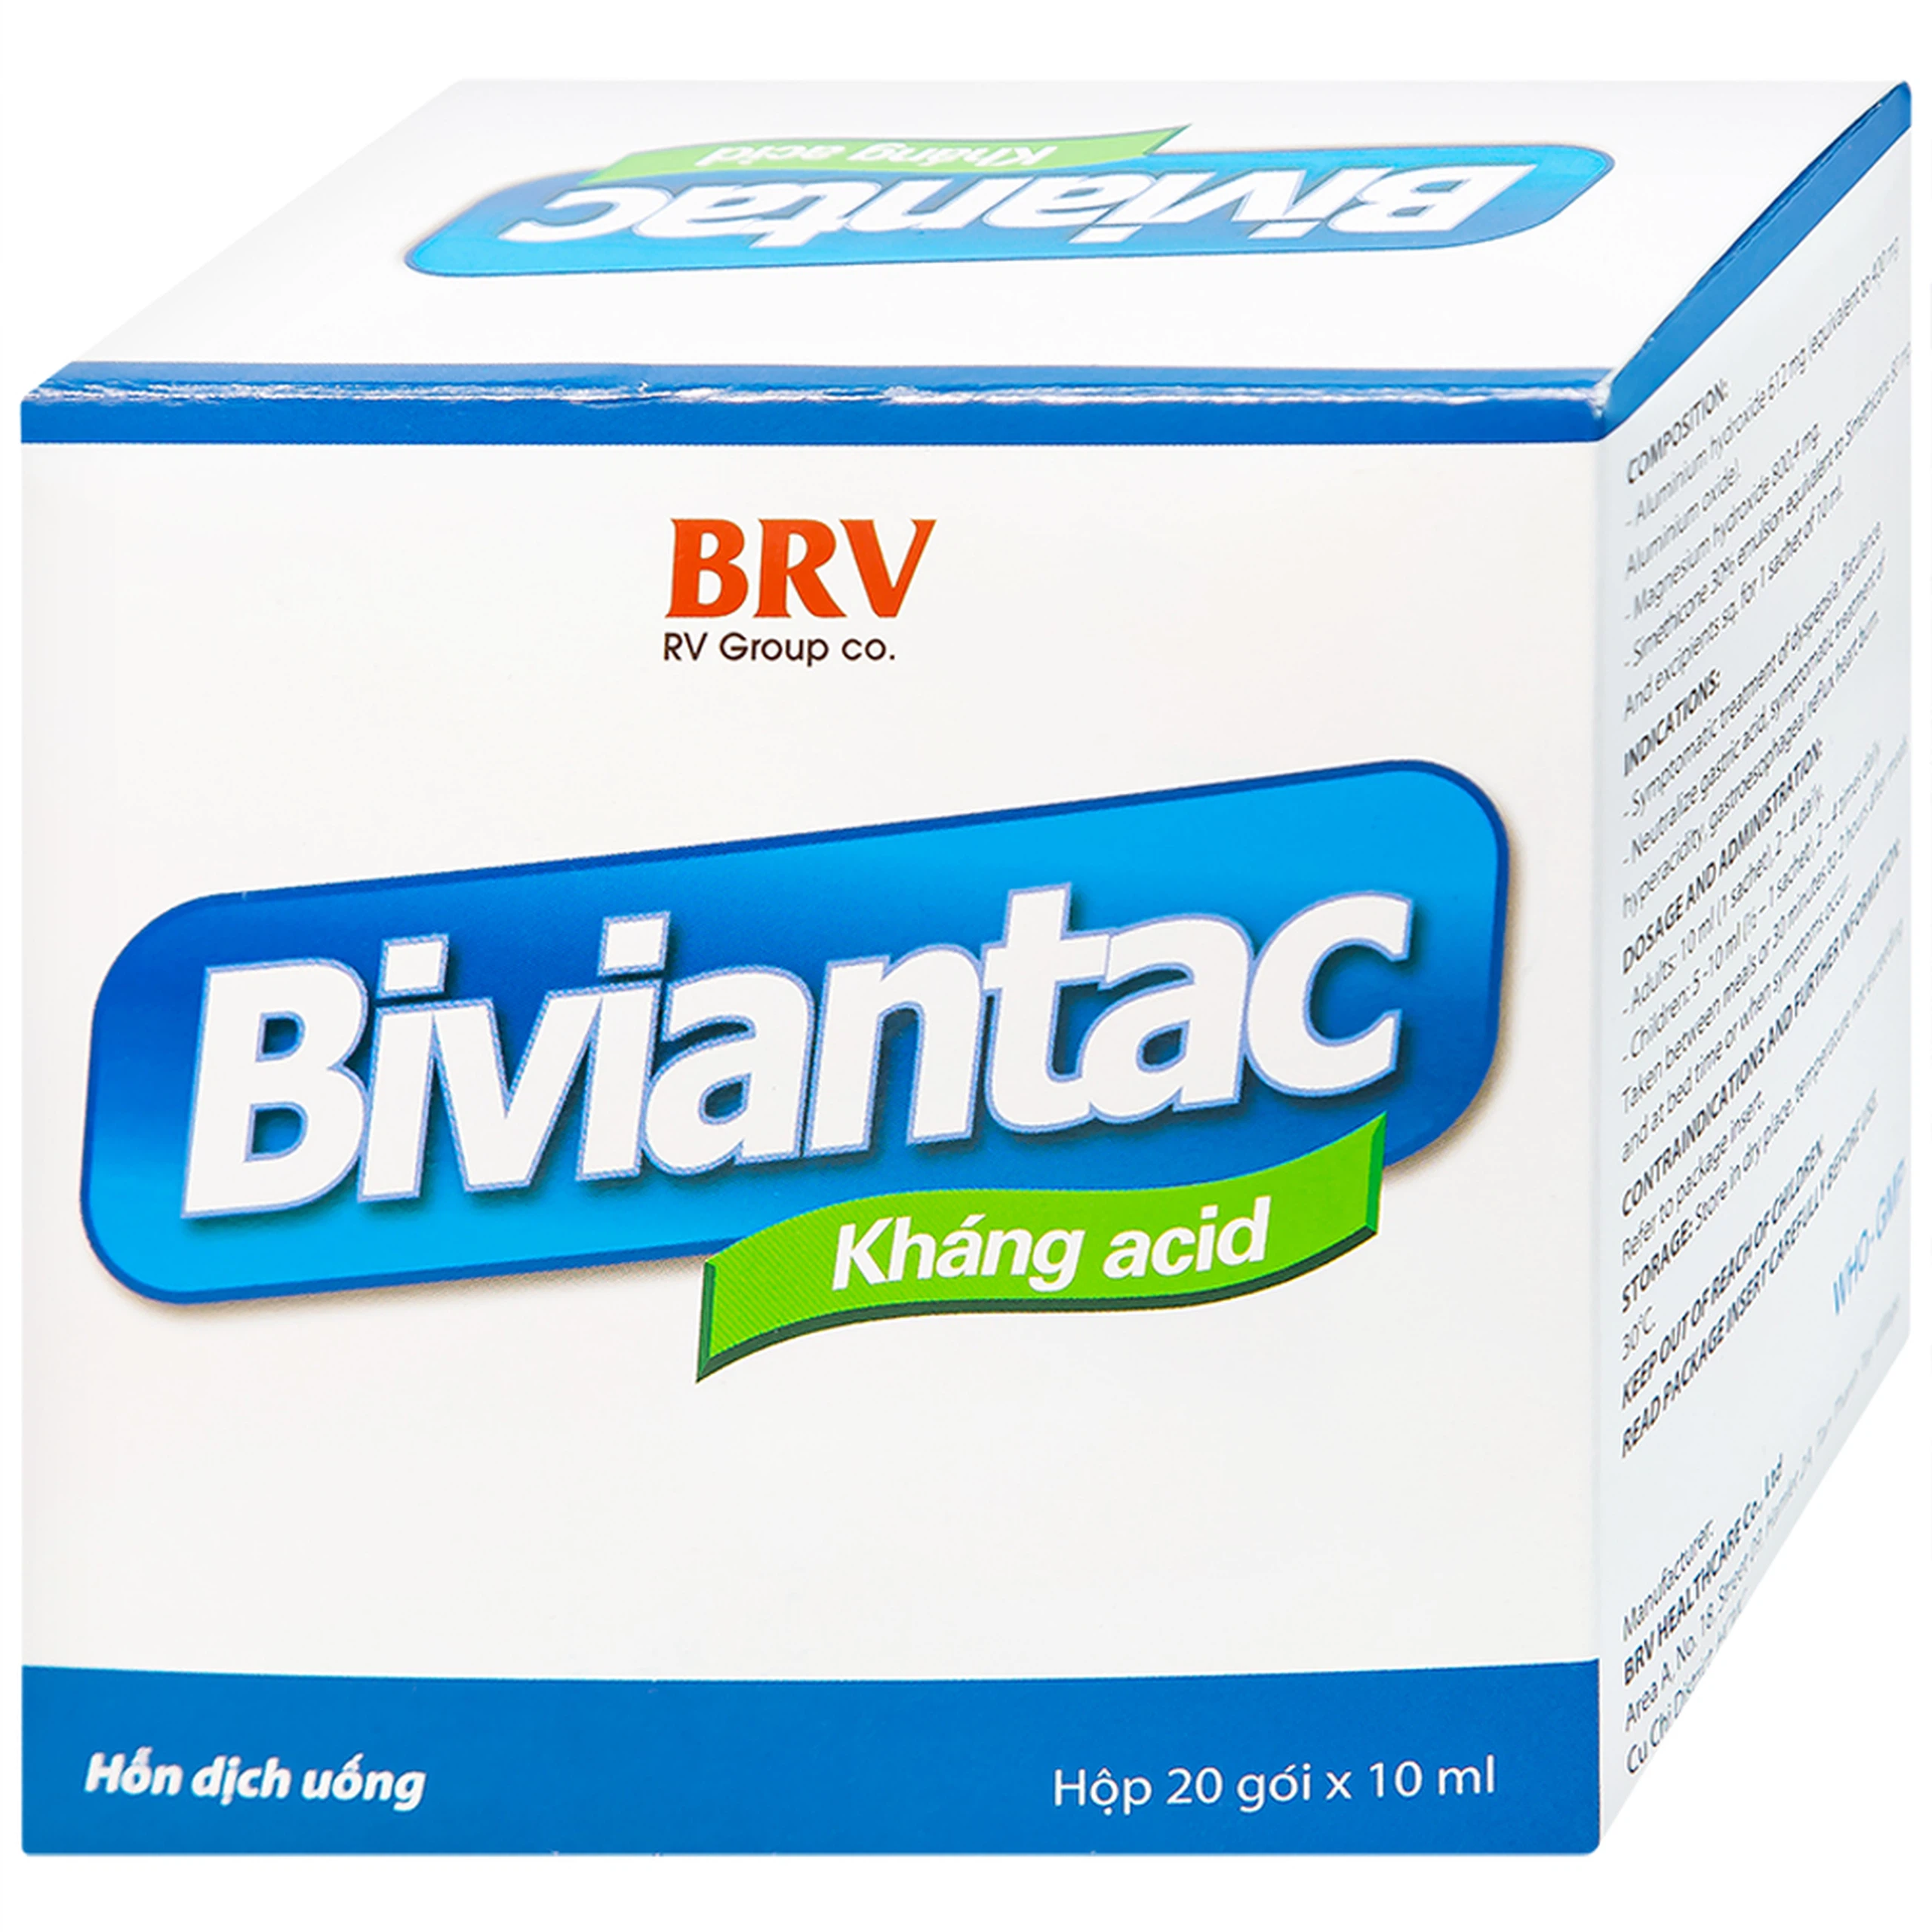 Hỗn dịch uống Biviantac BRV điều trị triệu chứng ăn không tiêu, đầy hơi (20 gói x 10 ml)